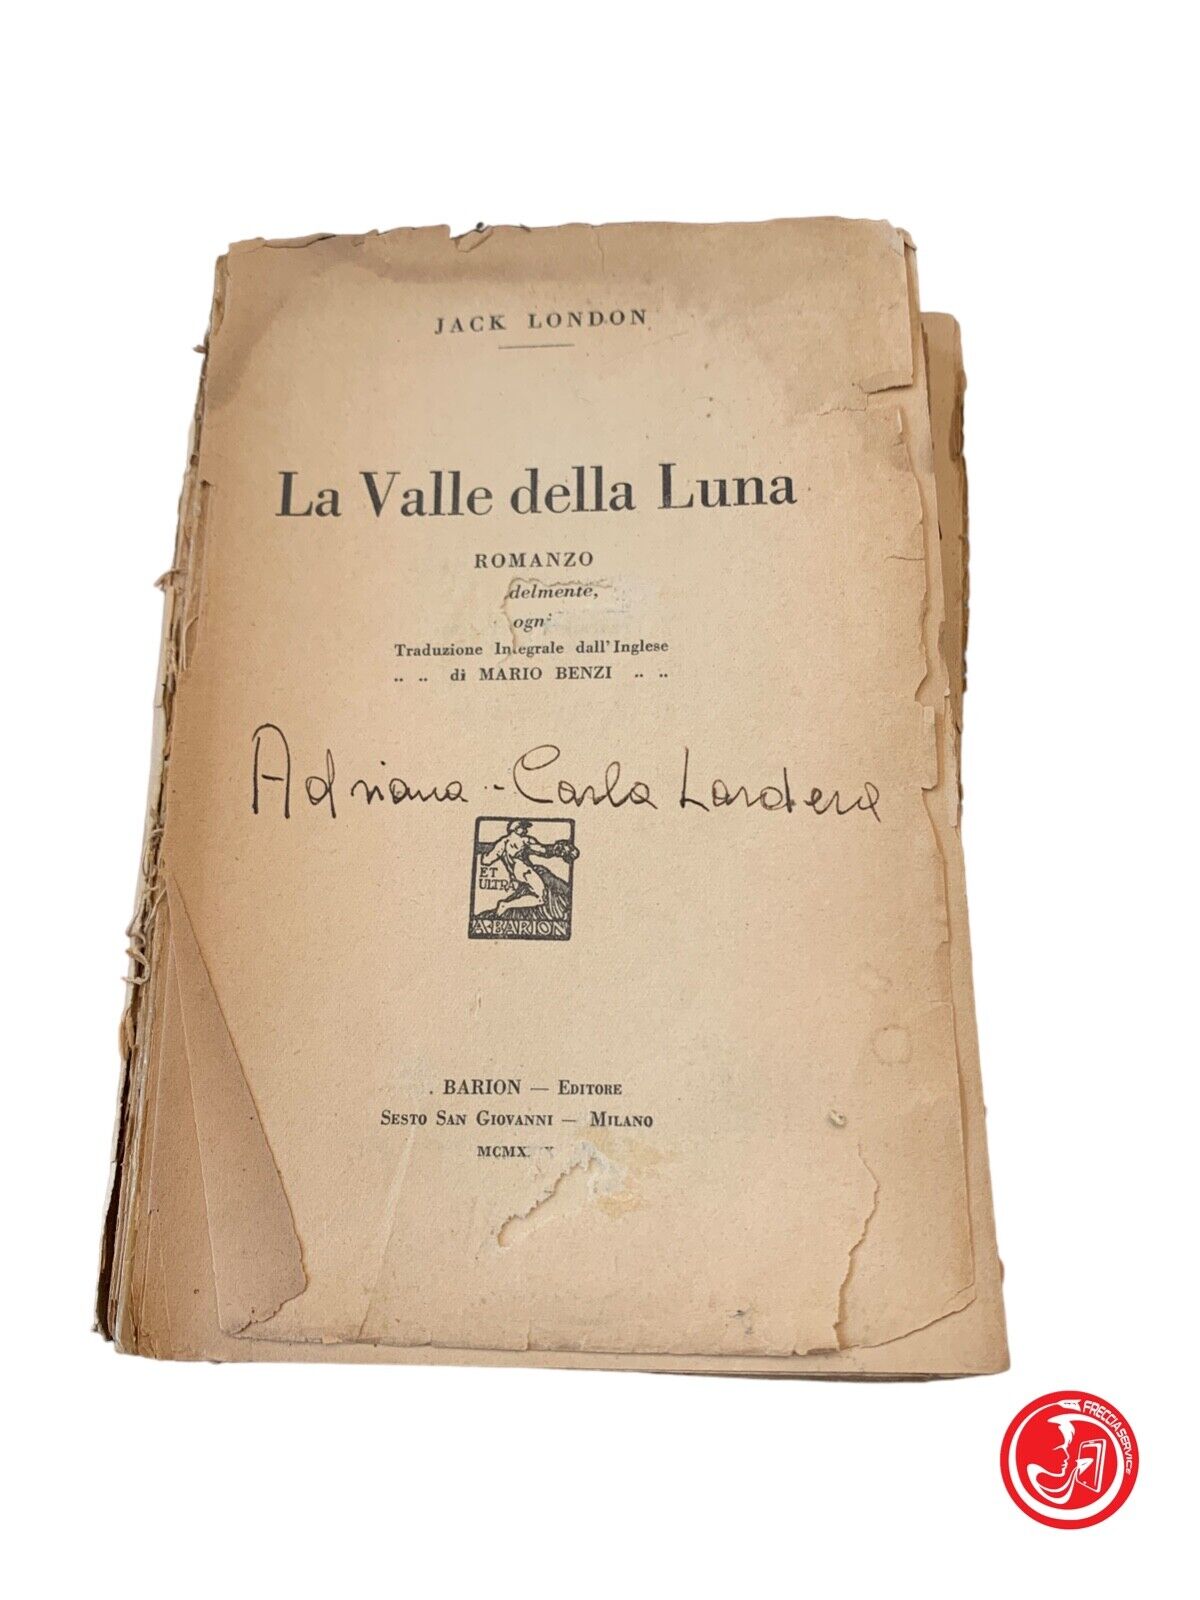 La Valle della Luna - Jack London - Barion Editore 1930